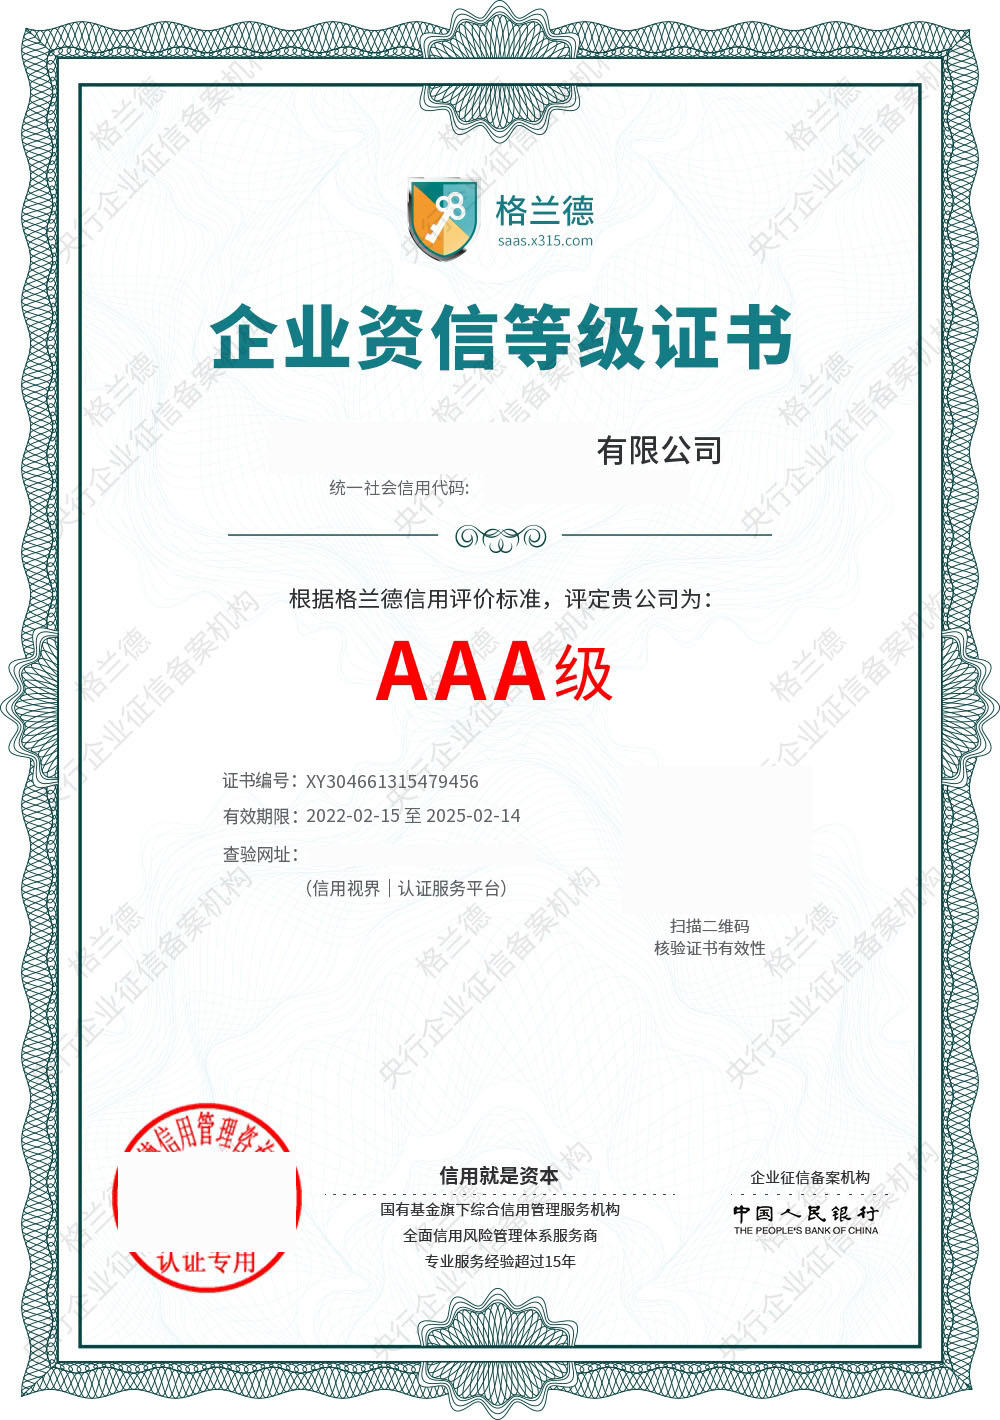 哈尔滨AAA企业信用评级认证